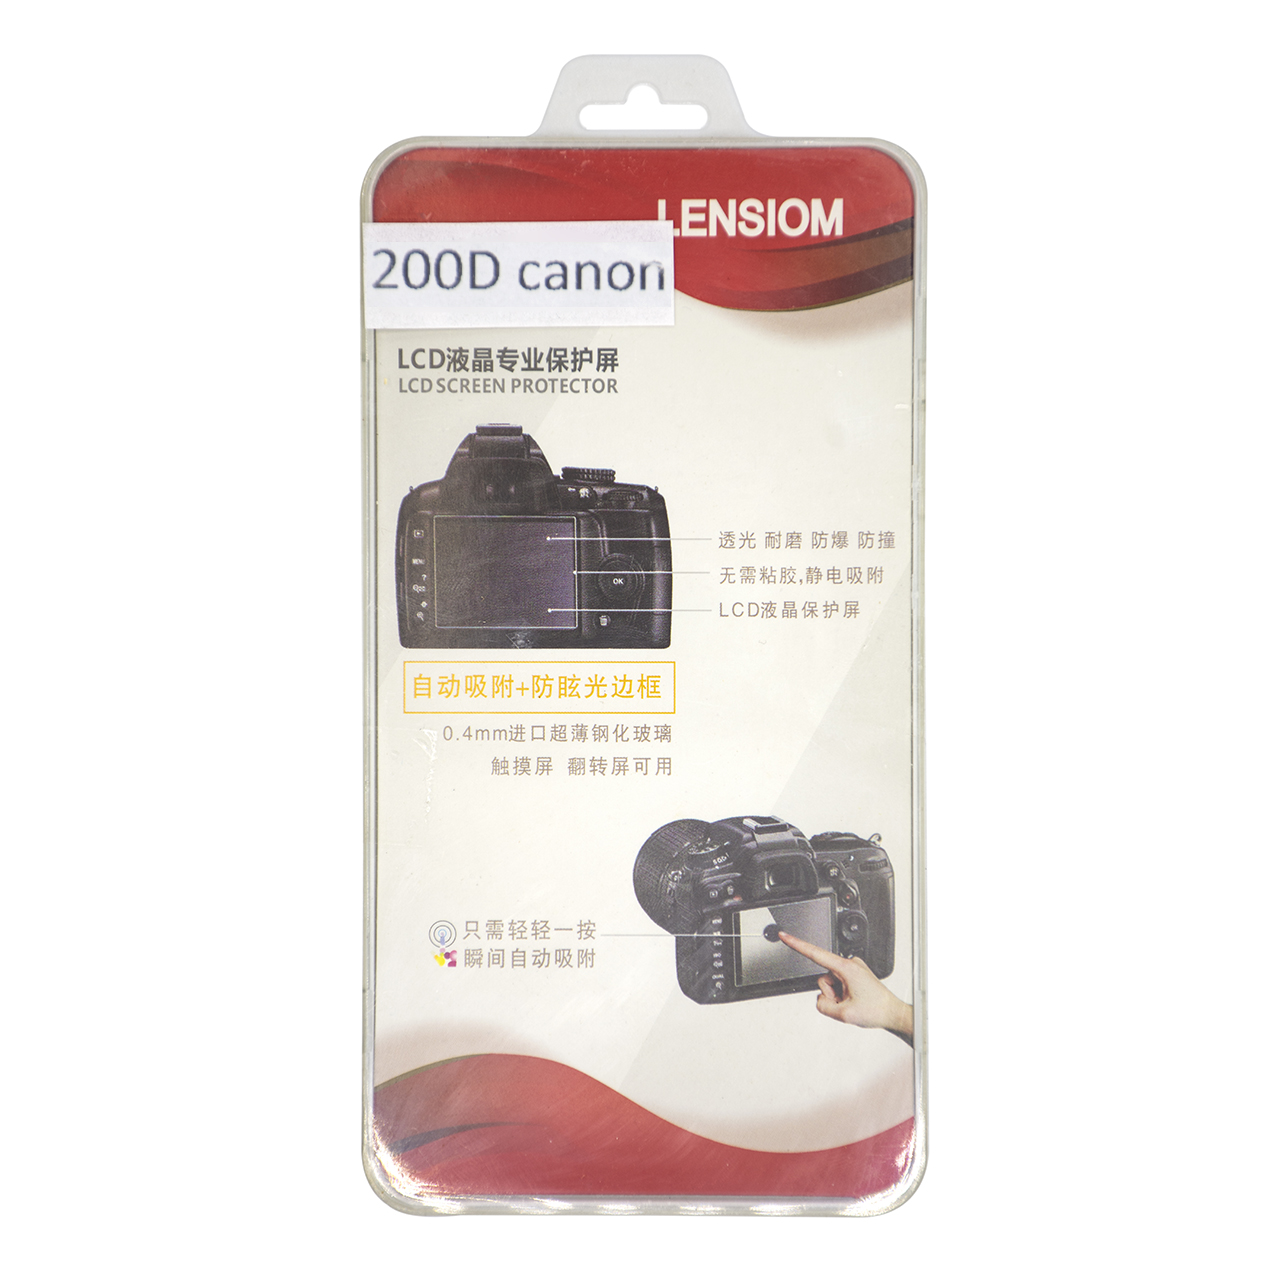 محافظ صفحه نمایش دوربین لنزیوم مدل L200D مناسب برای کانن 200D